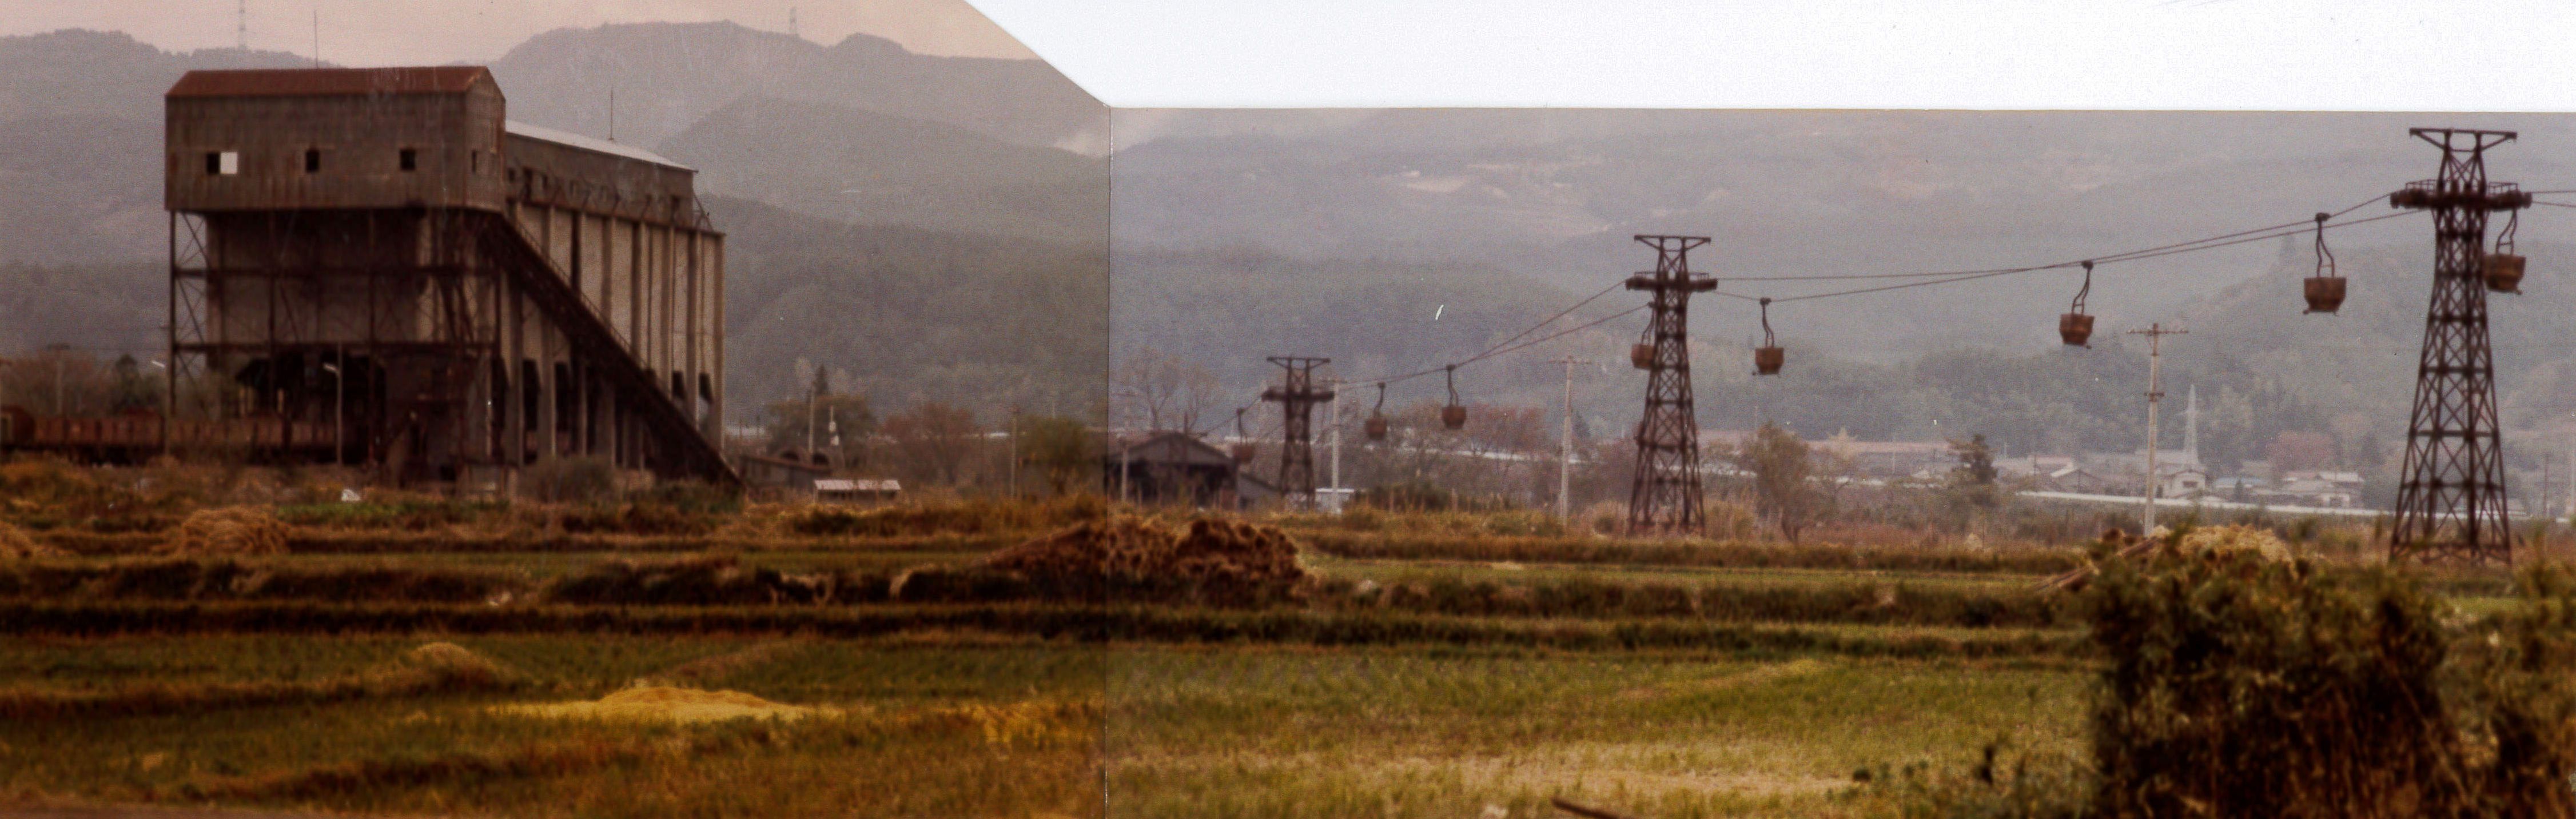 写真15　小川郷駅から延びていた粘土運搬の架空索道(昭和54年11月、いわき市撮影)